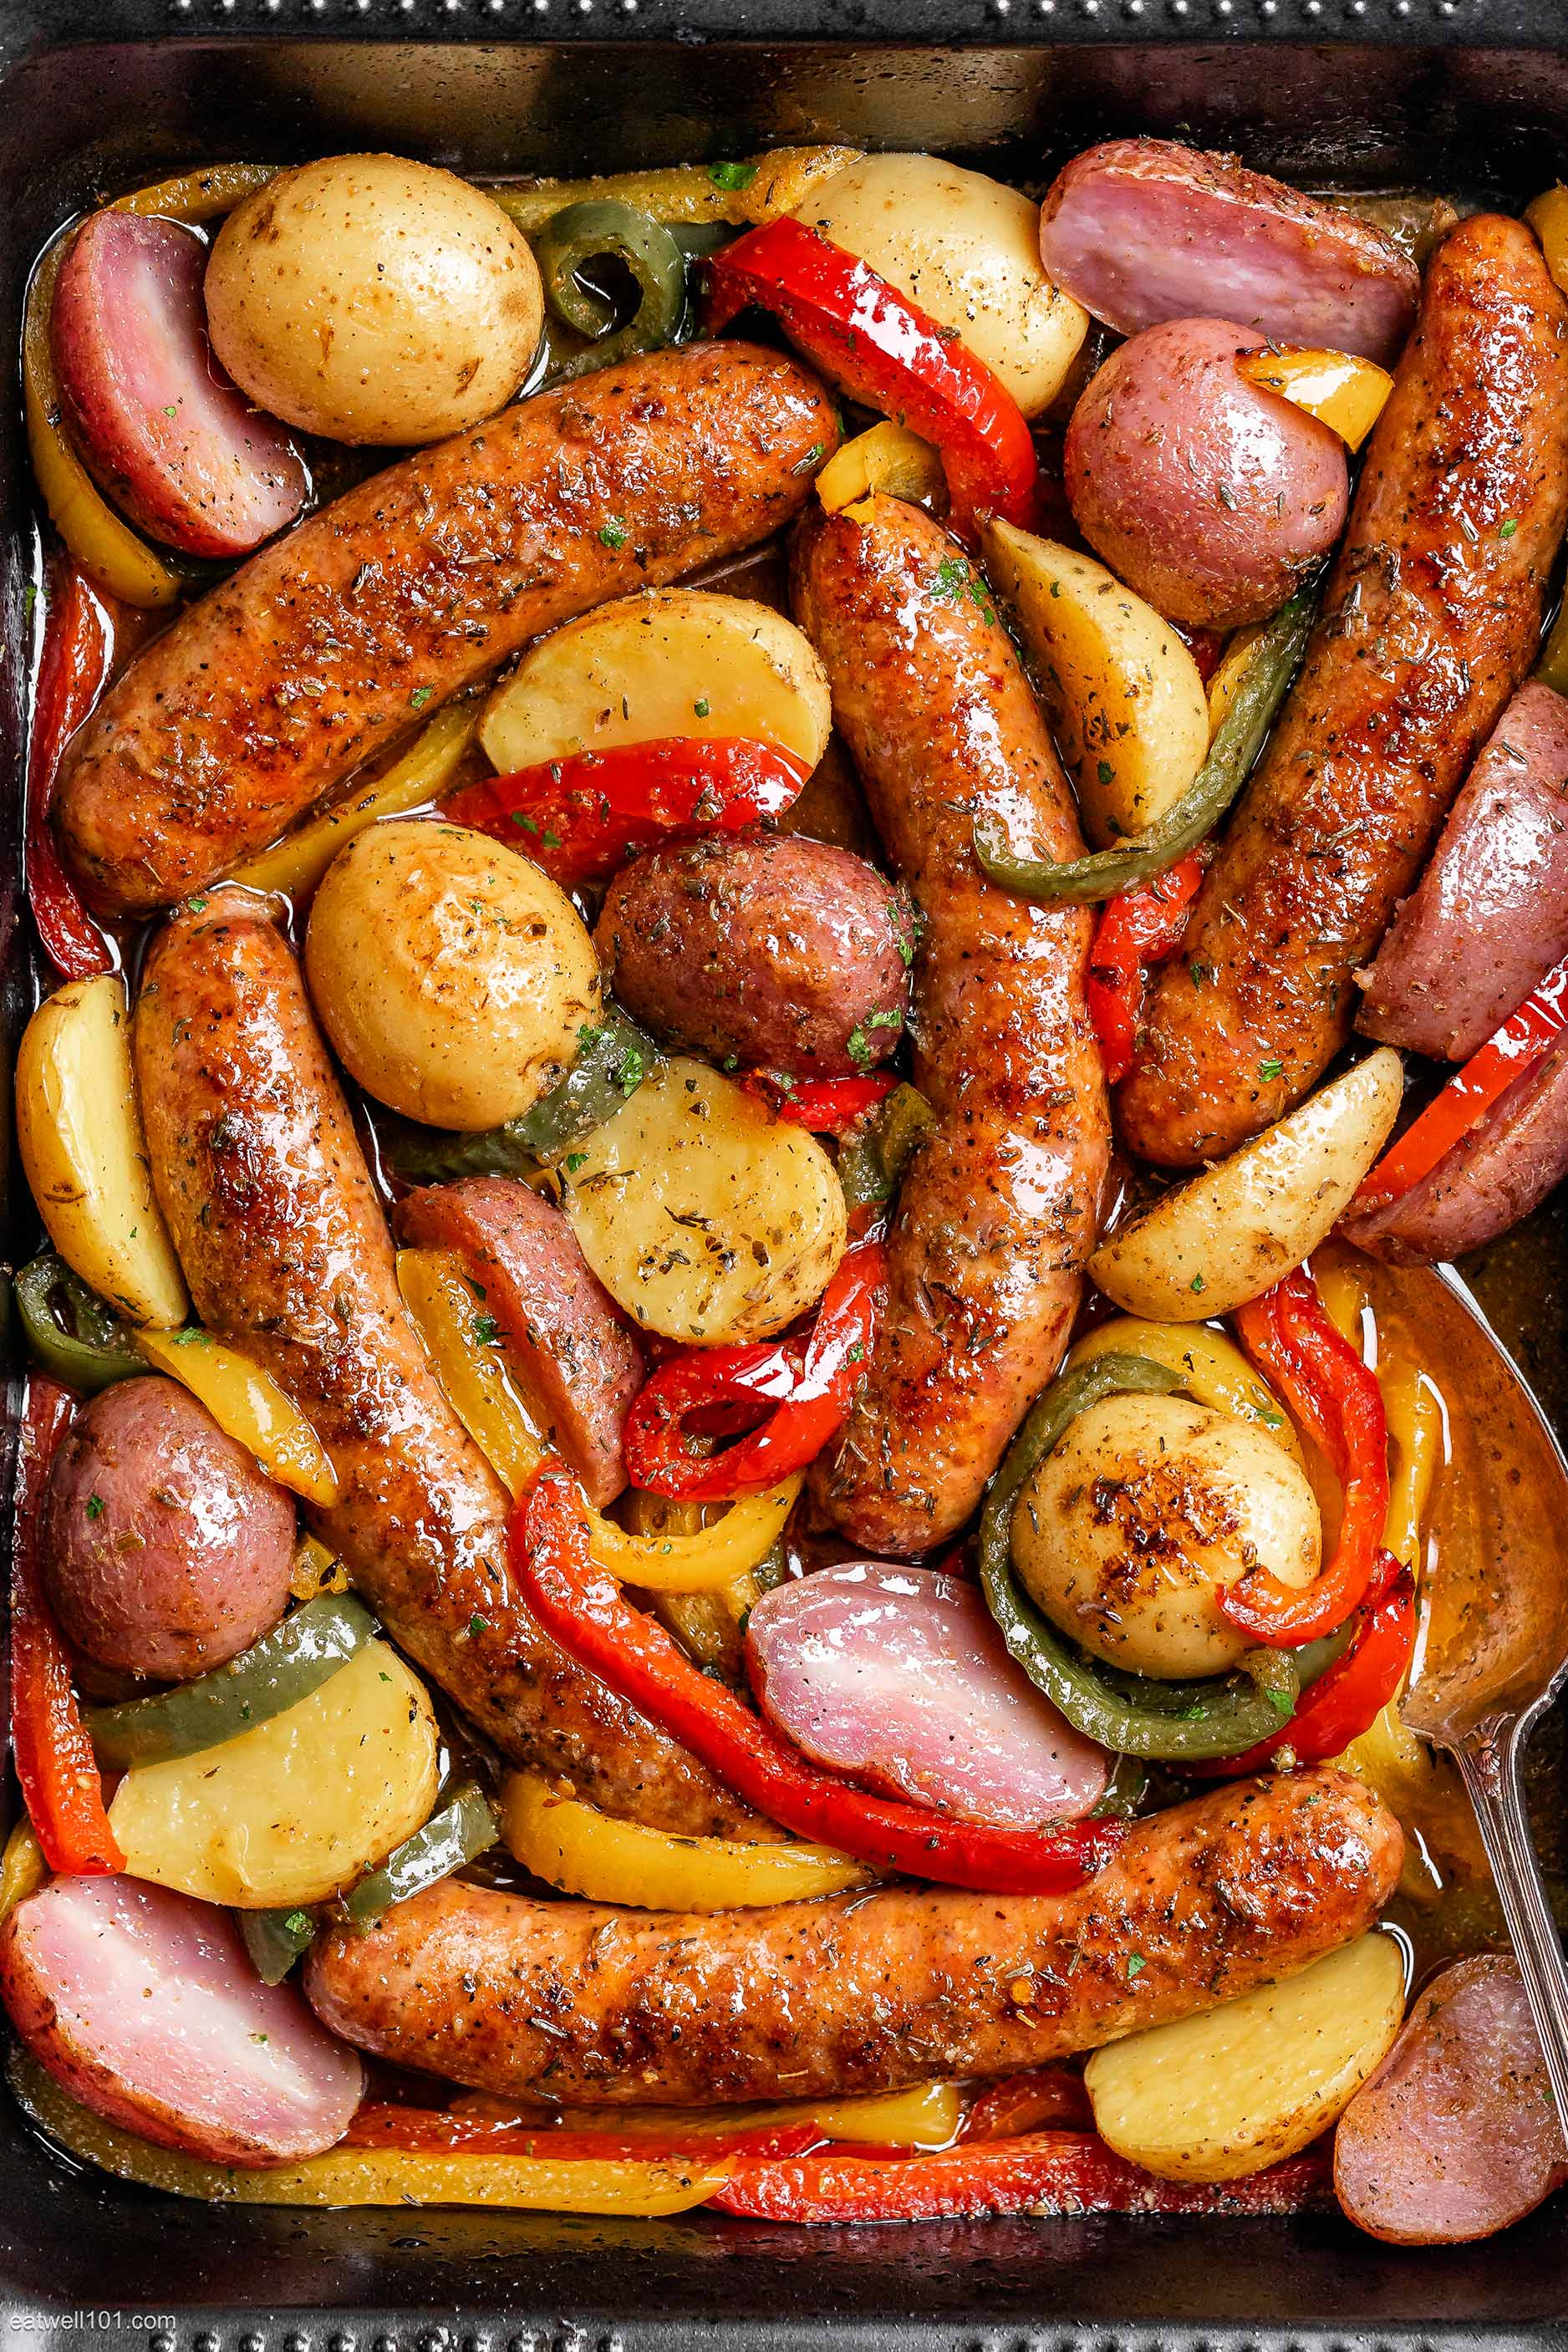 Baked Sausage & Potato Sheet Pan Dinner Recipe – Sheet Pan Recipe